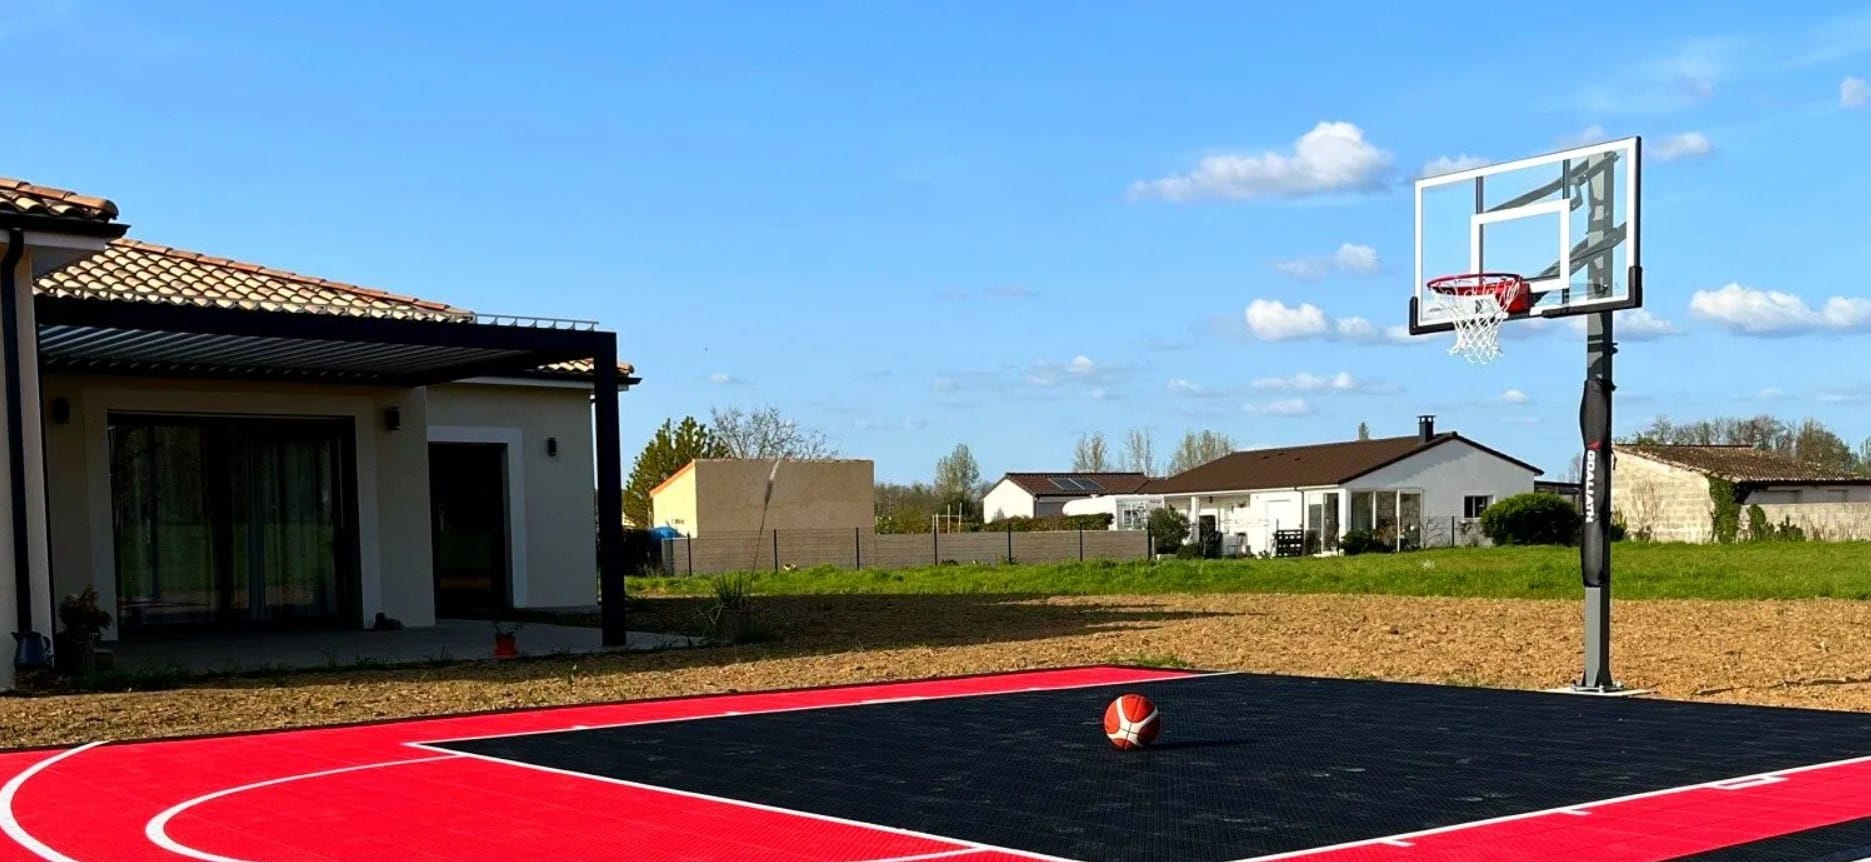 Terrain de basketball installé à la maison d'un particulier